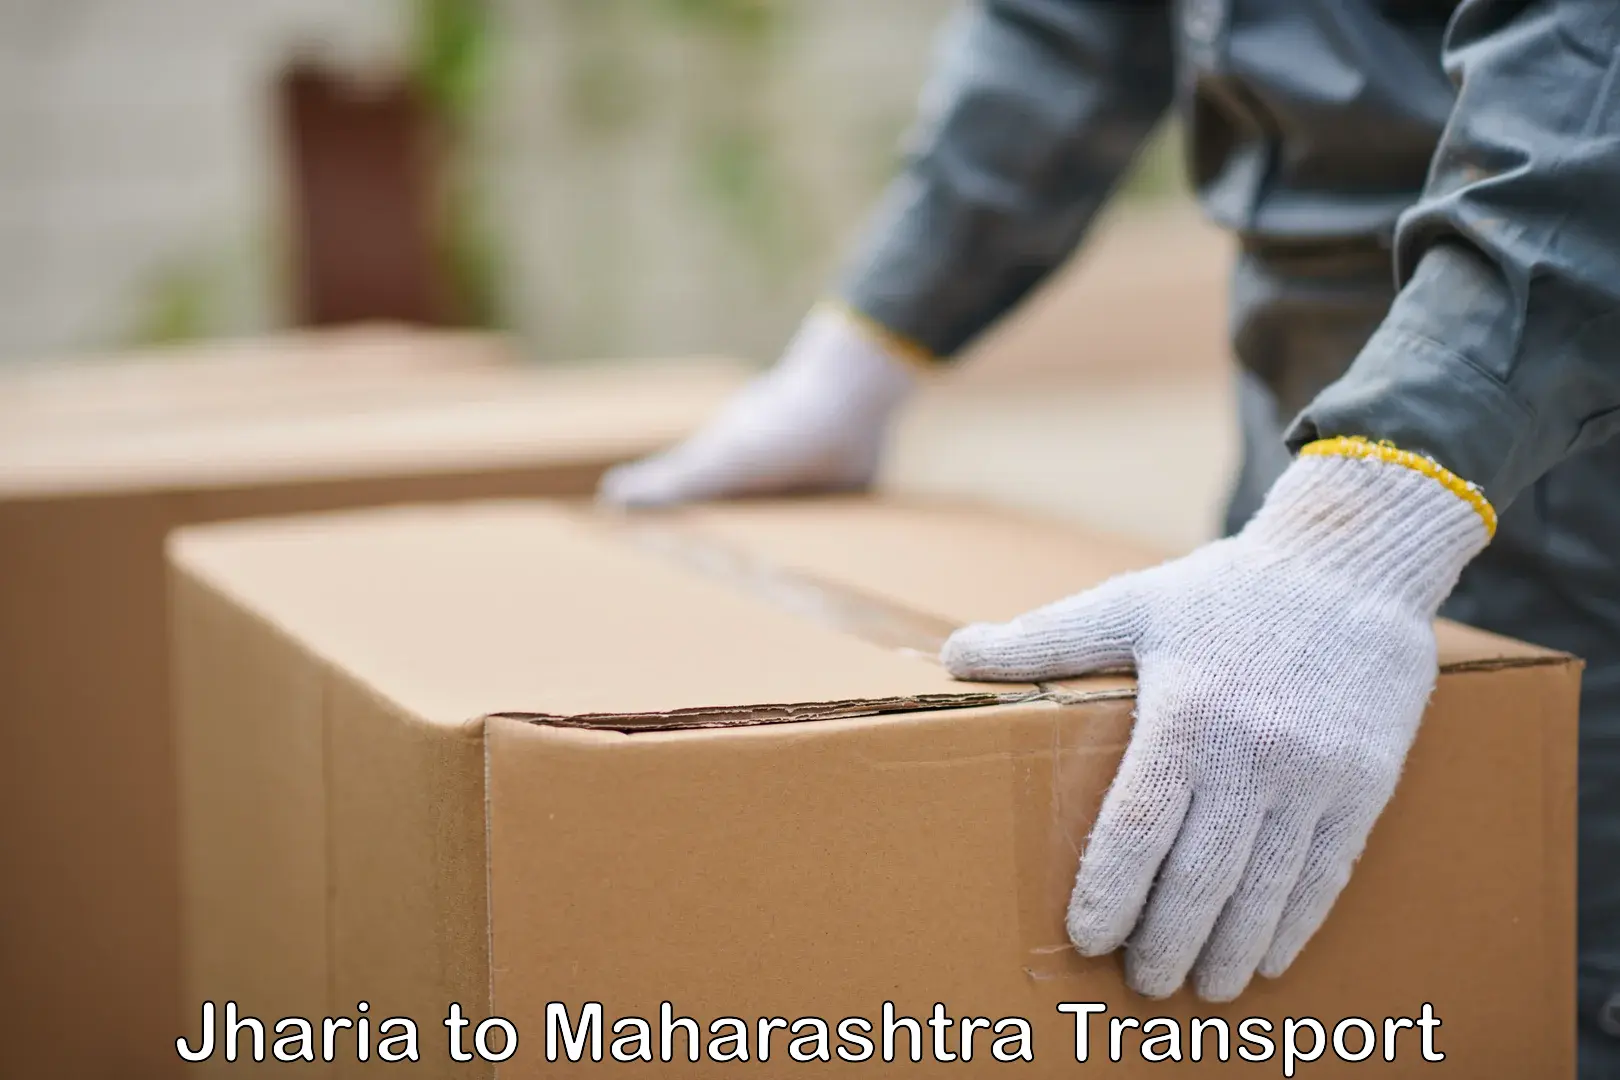 Commercial transport service Jharia to Maharashtra